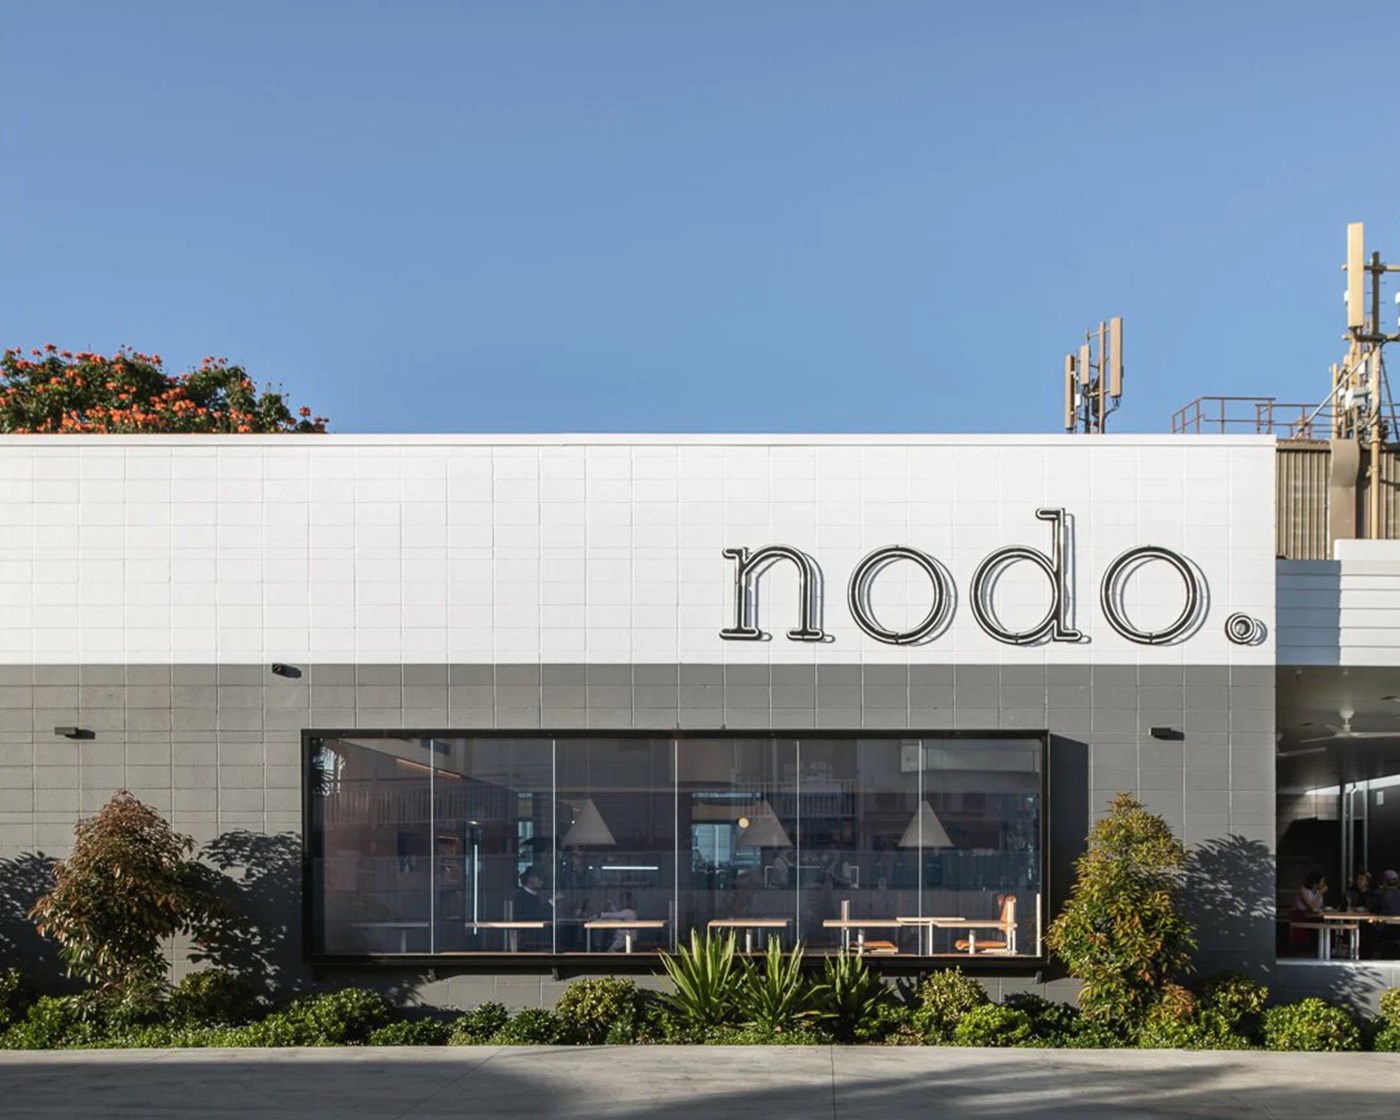 Exterior shot of the Nodo Cafe building